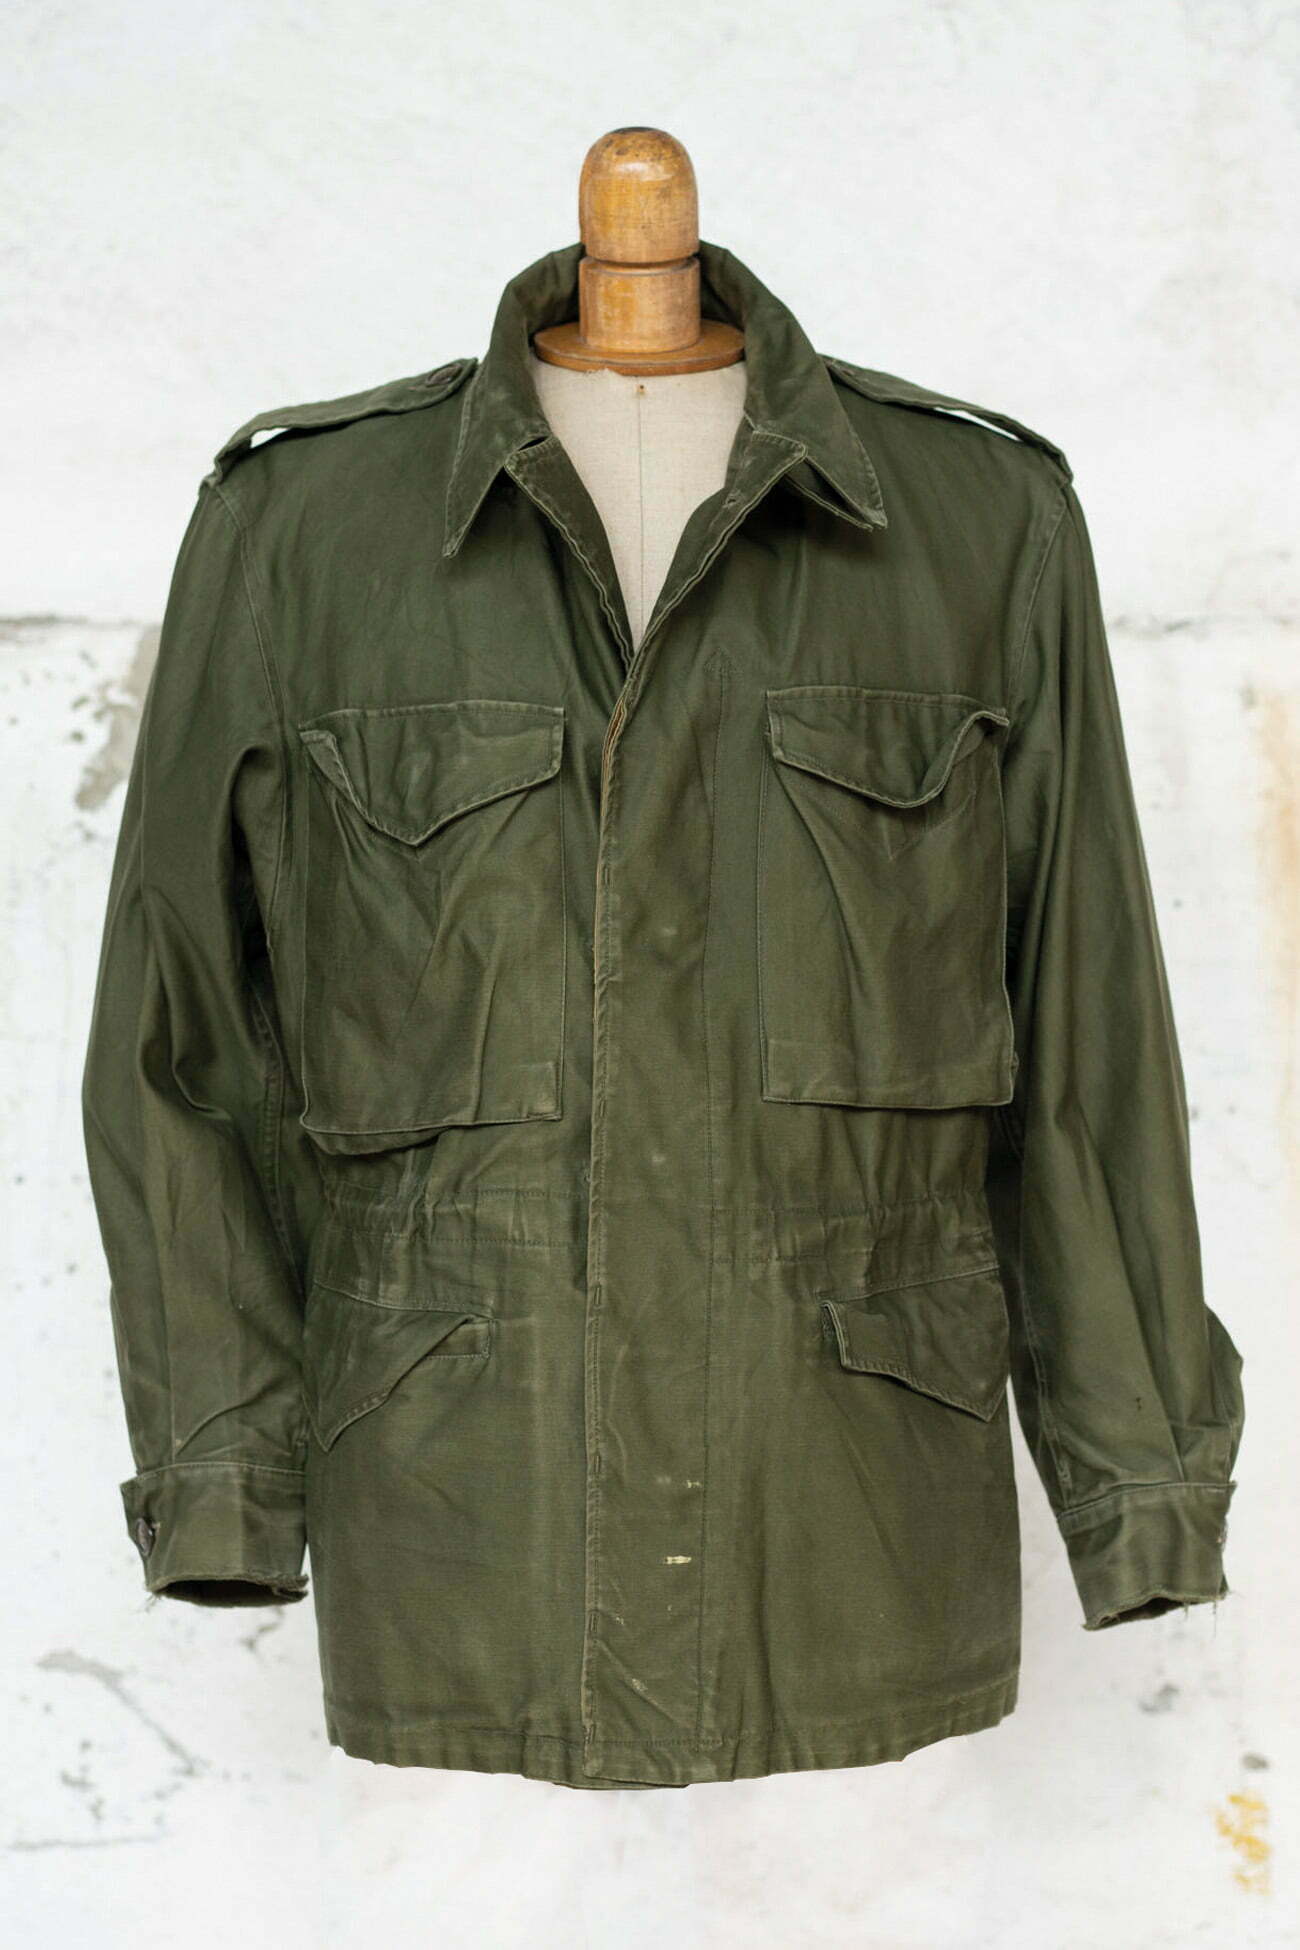 1950 M-50 Field Jacket